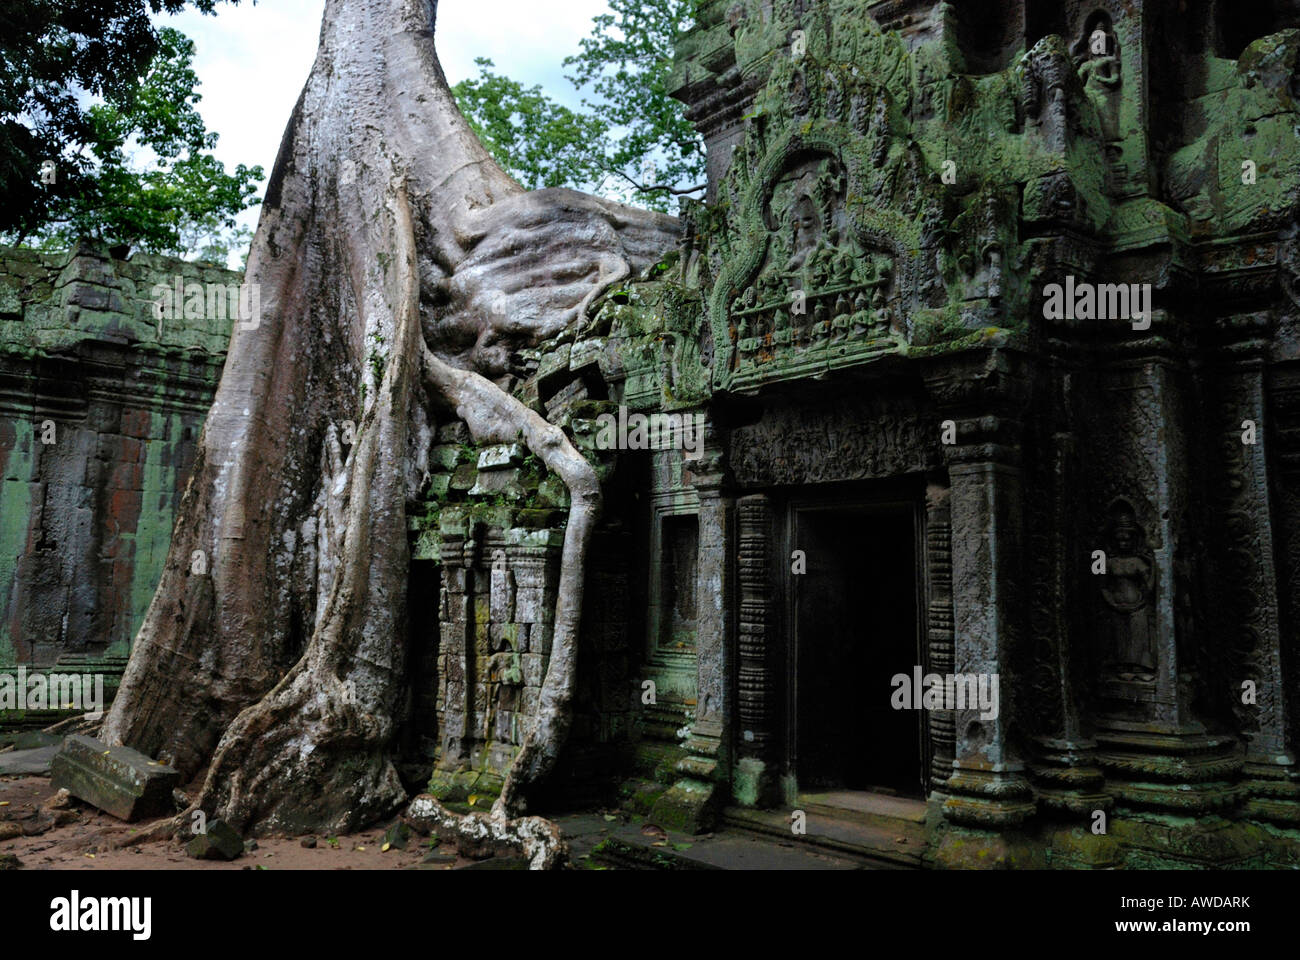 Las raíces de un gigantesco árbol tropical creciendo sobre los de Ta Prohm runins tempel, Angkor, Camboya Foto de stock